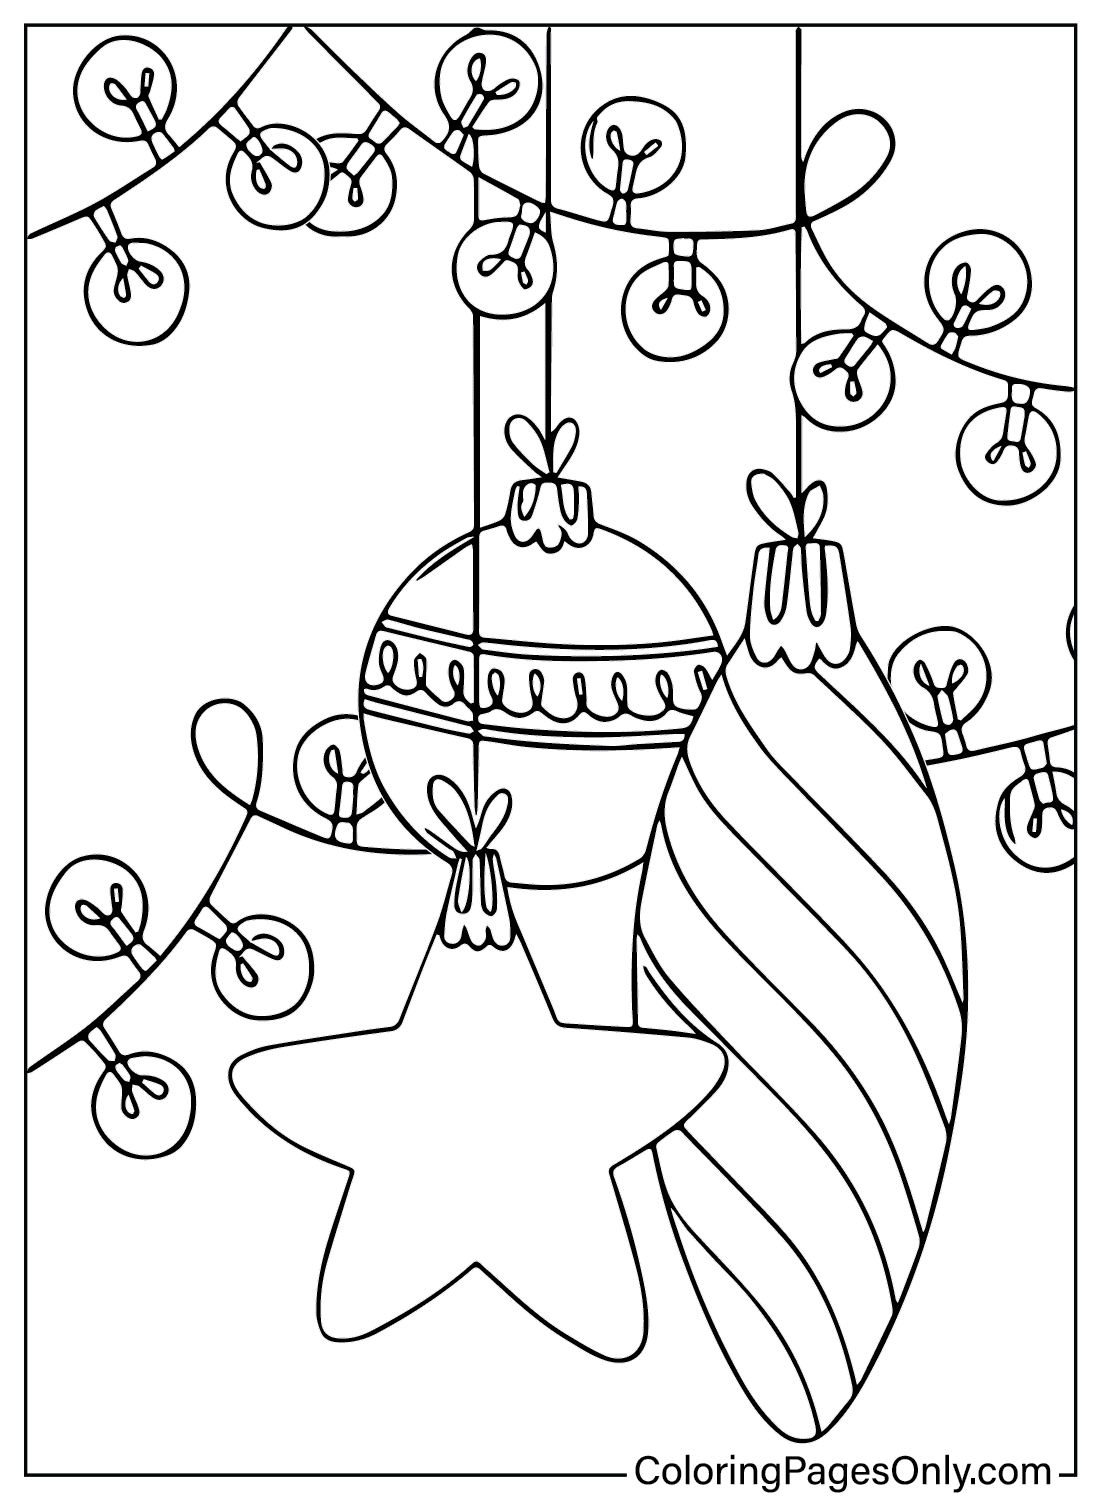 Pagina da colorare di ornamenti natalizi senza ornamenti natalizi